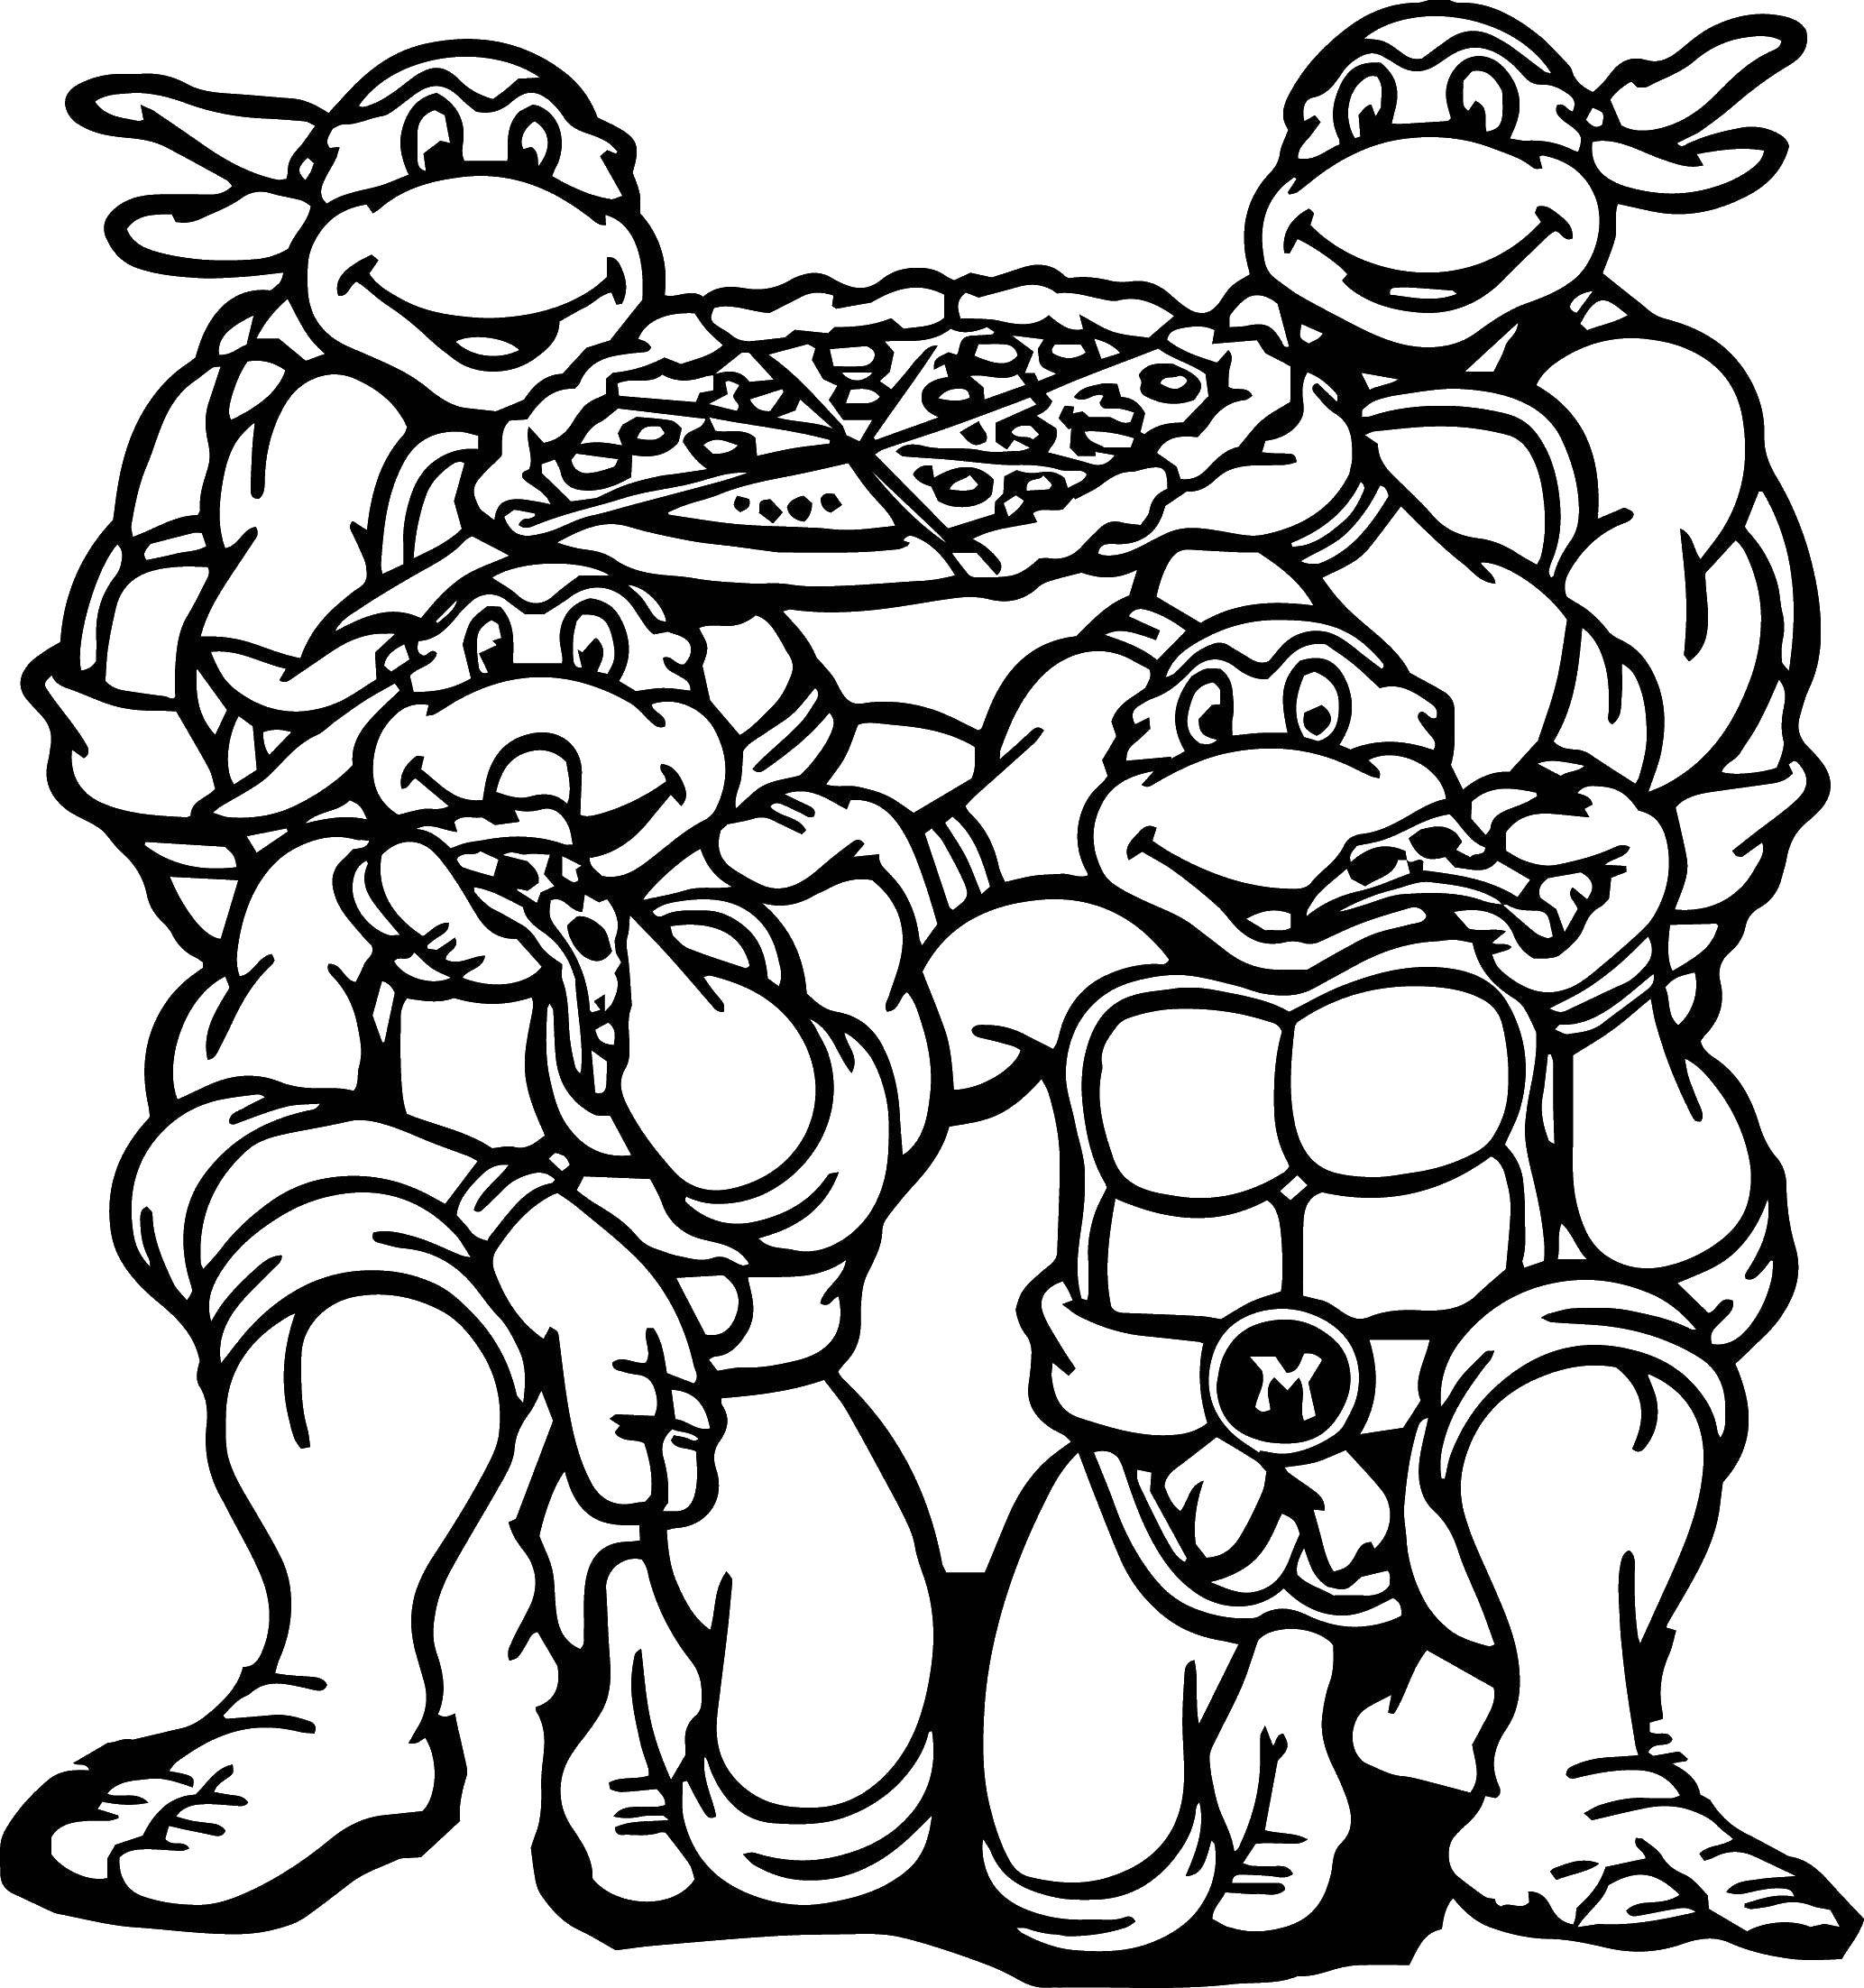 Coloring Pizza lovers. Category ninja . Tags:  Comics, Teenage Mutant Ninja Turtles.